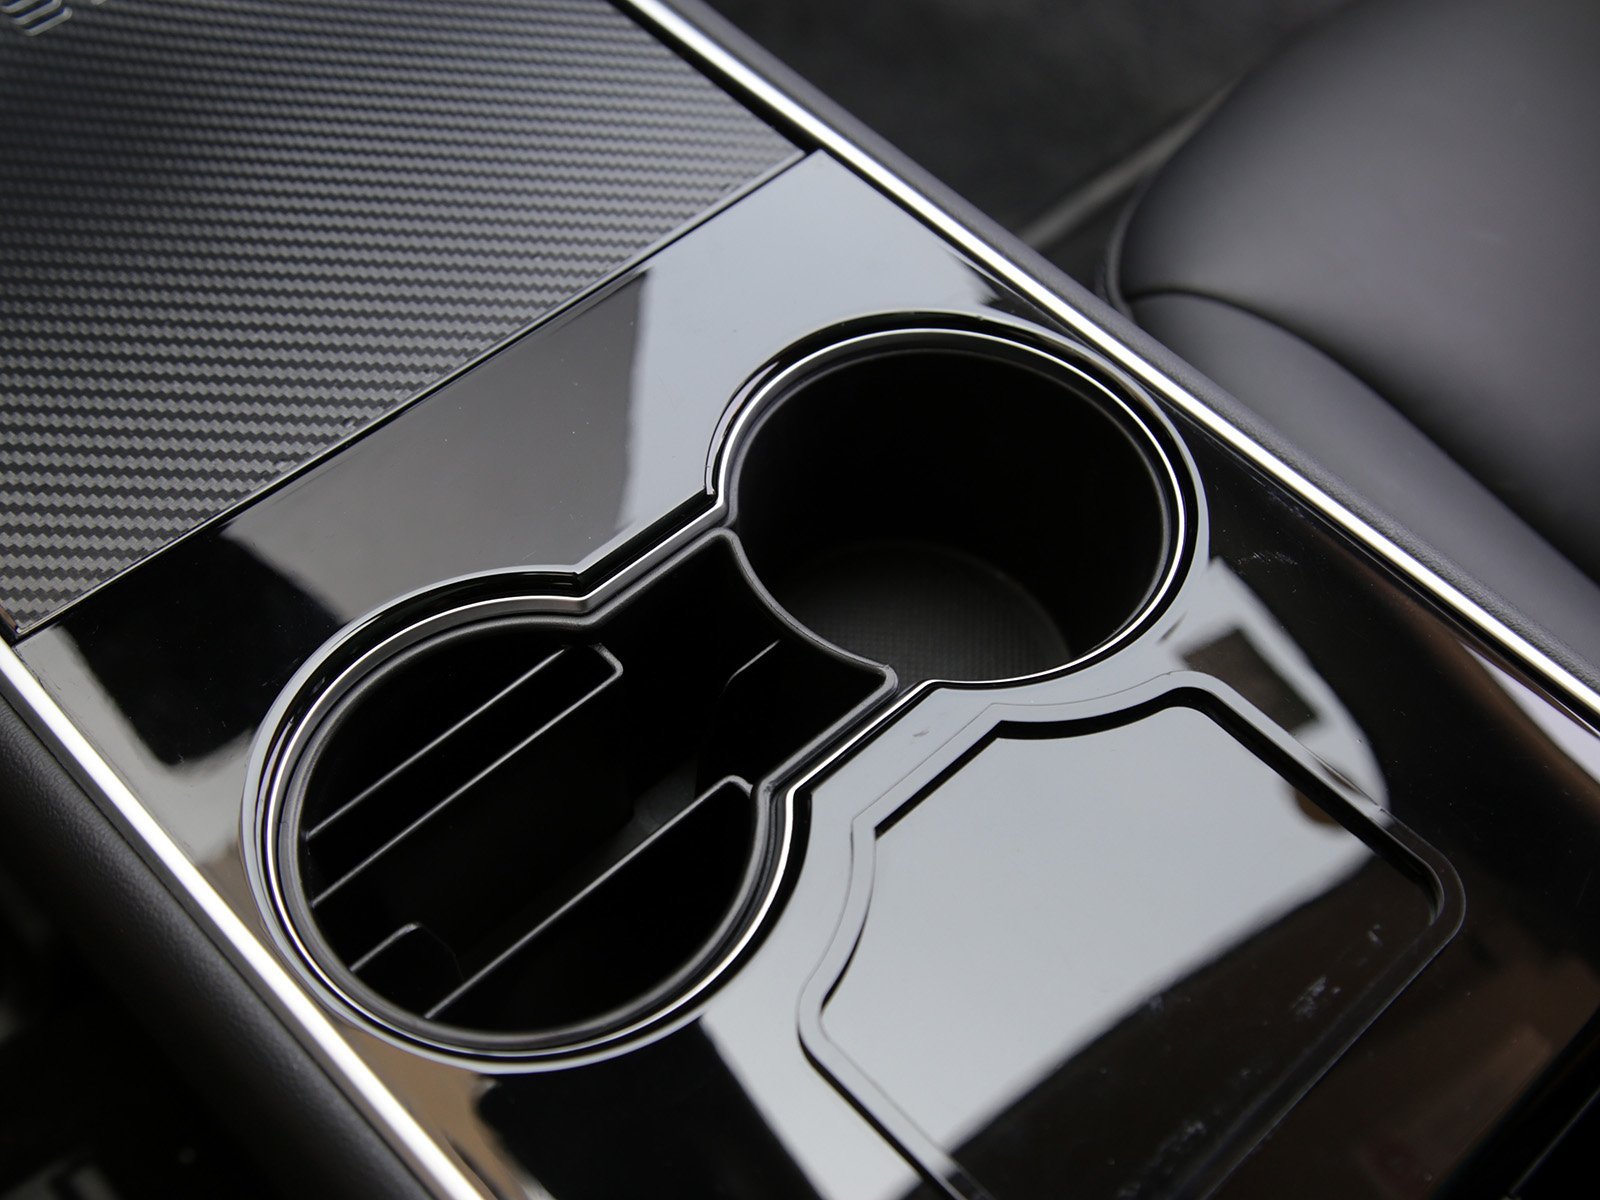 Accessoire Tesla : Boîtes de rangement moquette Model 3+ Highland – Allset